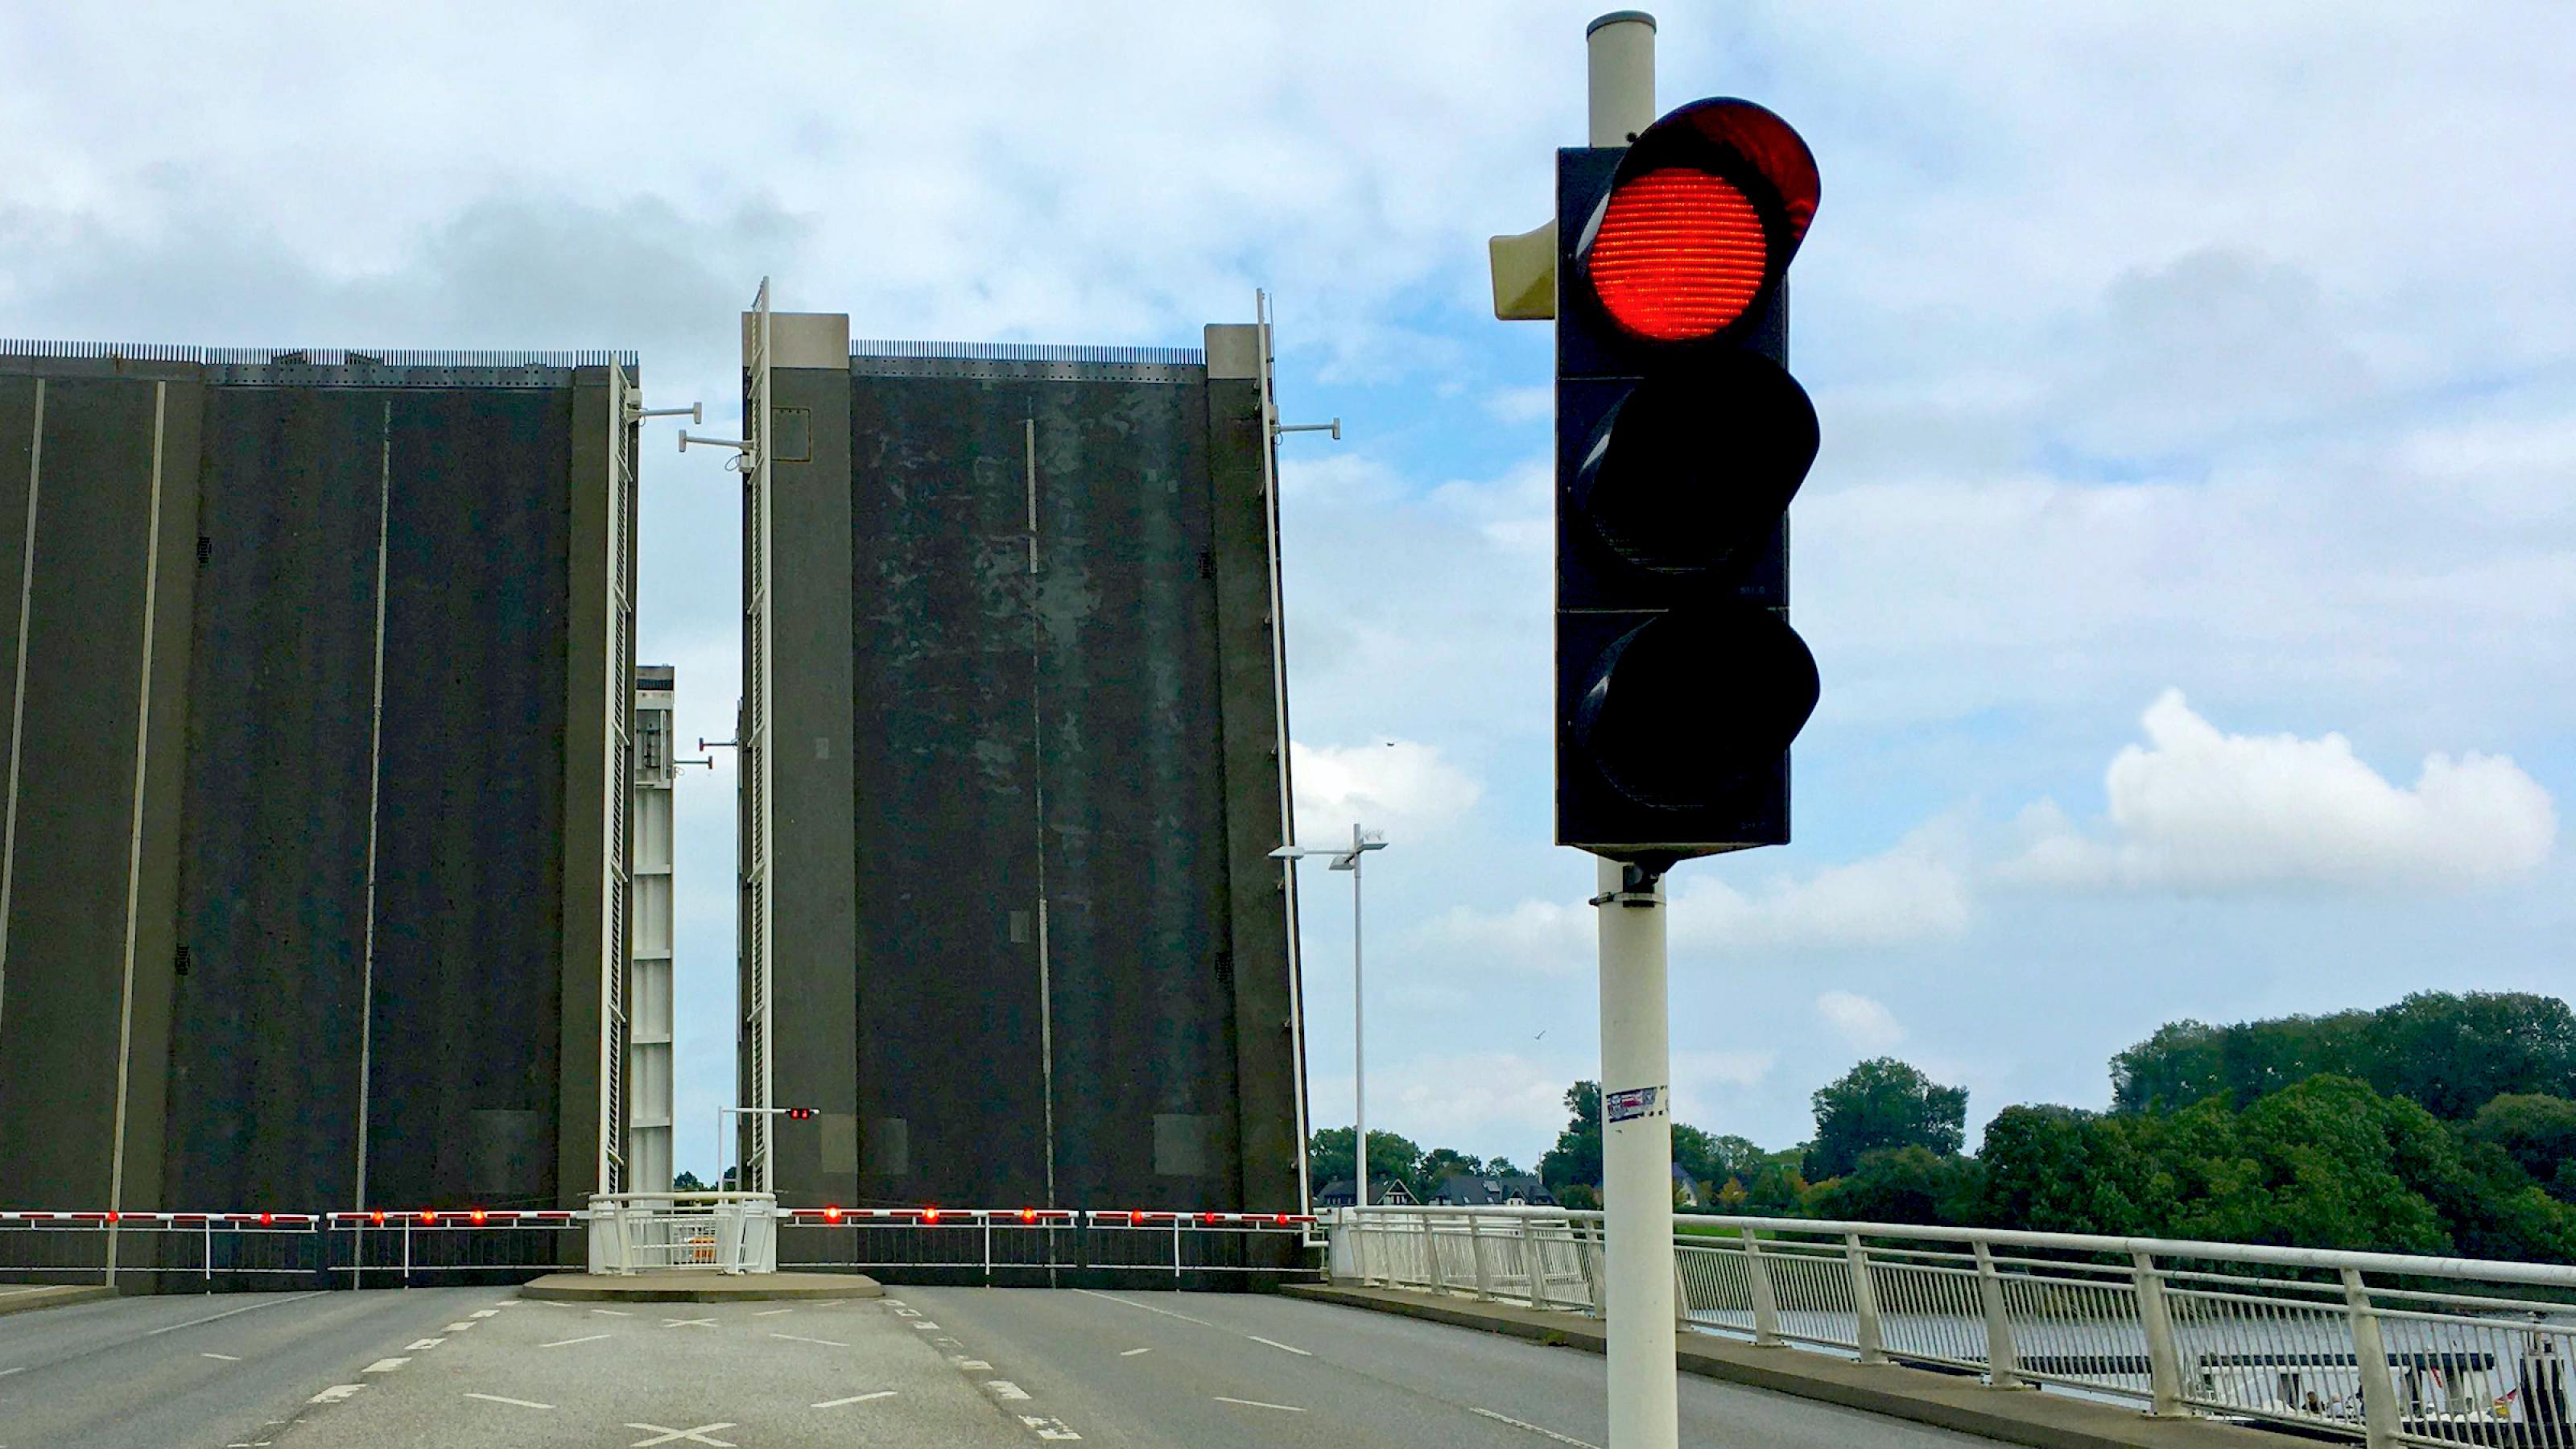 Eine Klappbrücke, hier in Kapseln an der Schlei, ist hochgeklappt, davor sperrt eine rote Ampel die Straße für den Verkehr.